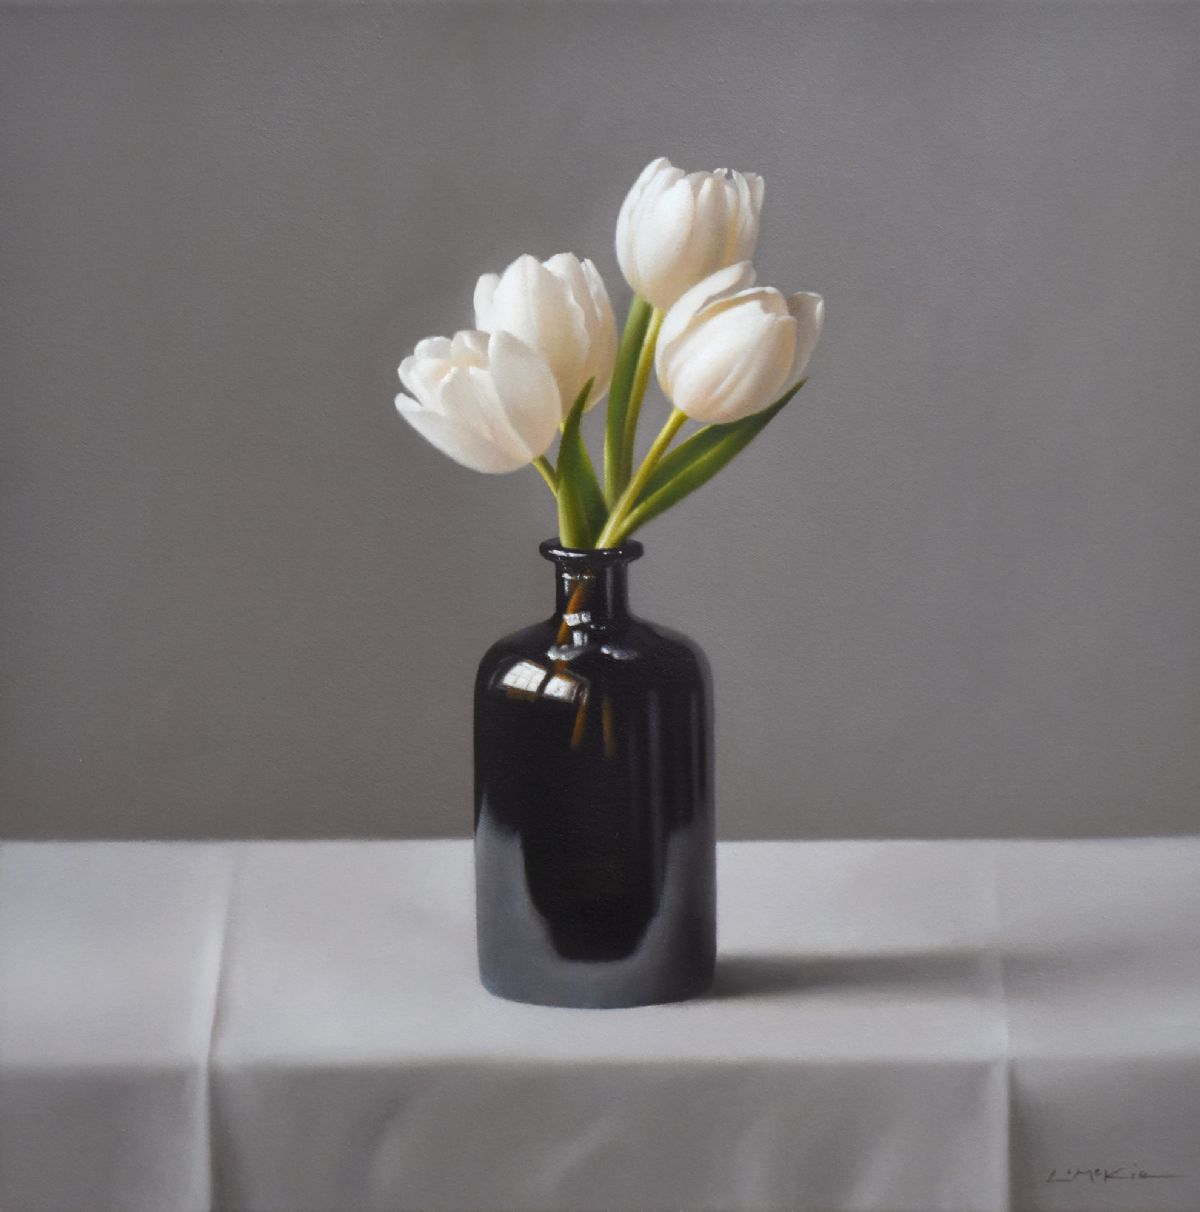 Four White Tulips